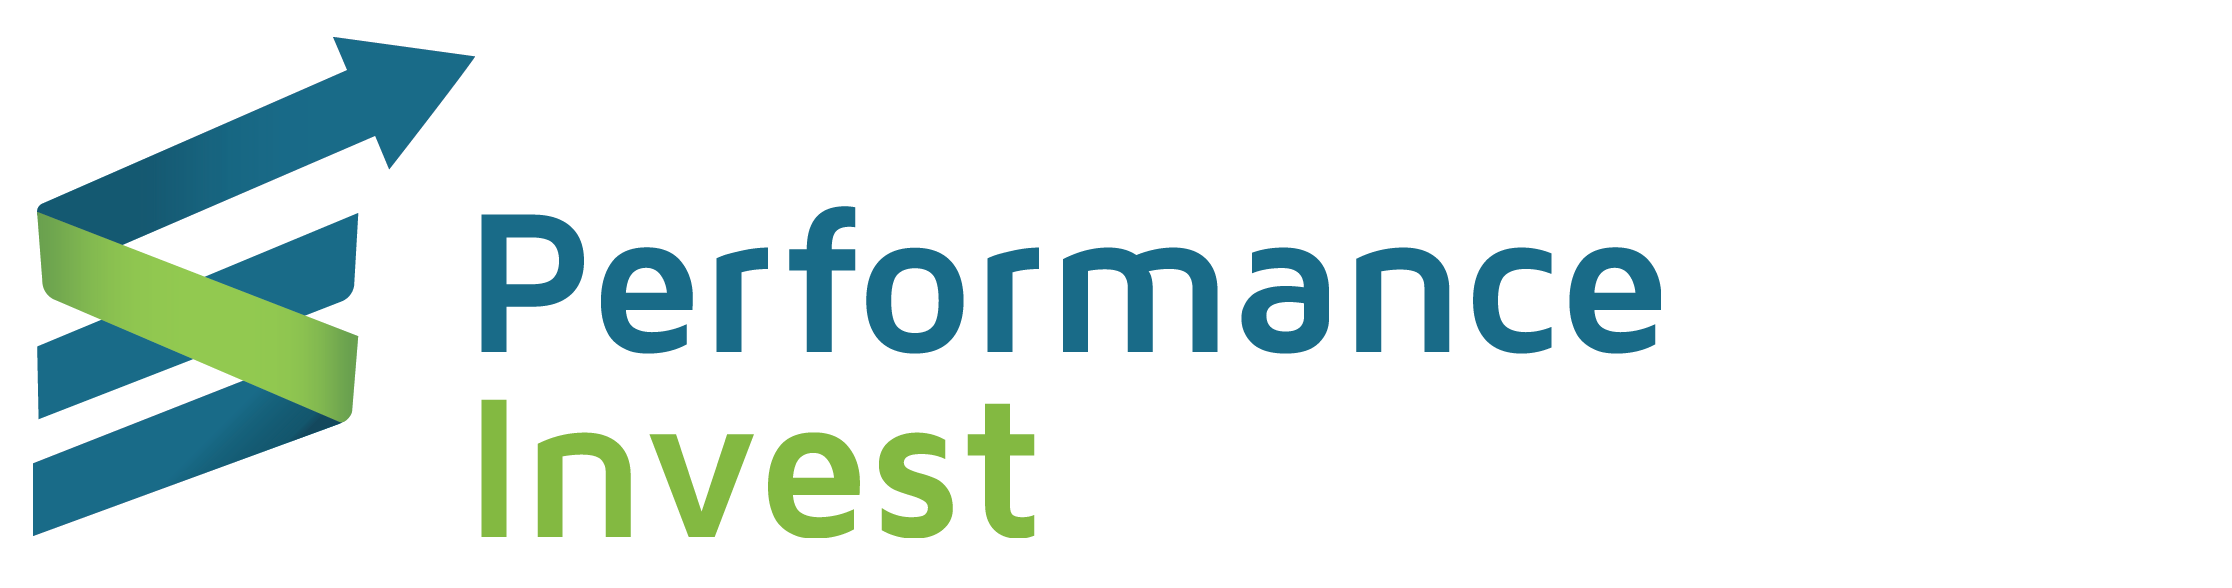 Performance Invest – assessoria de investimentos credenciada junto a XP Investimentos.